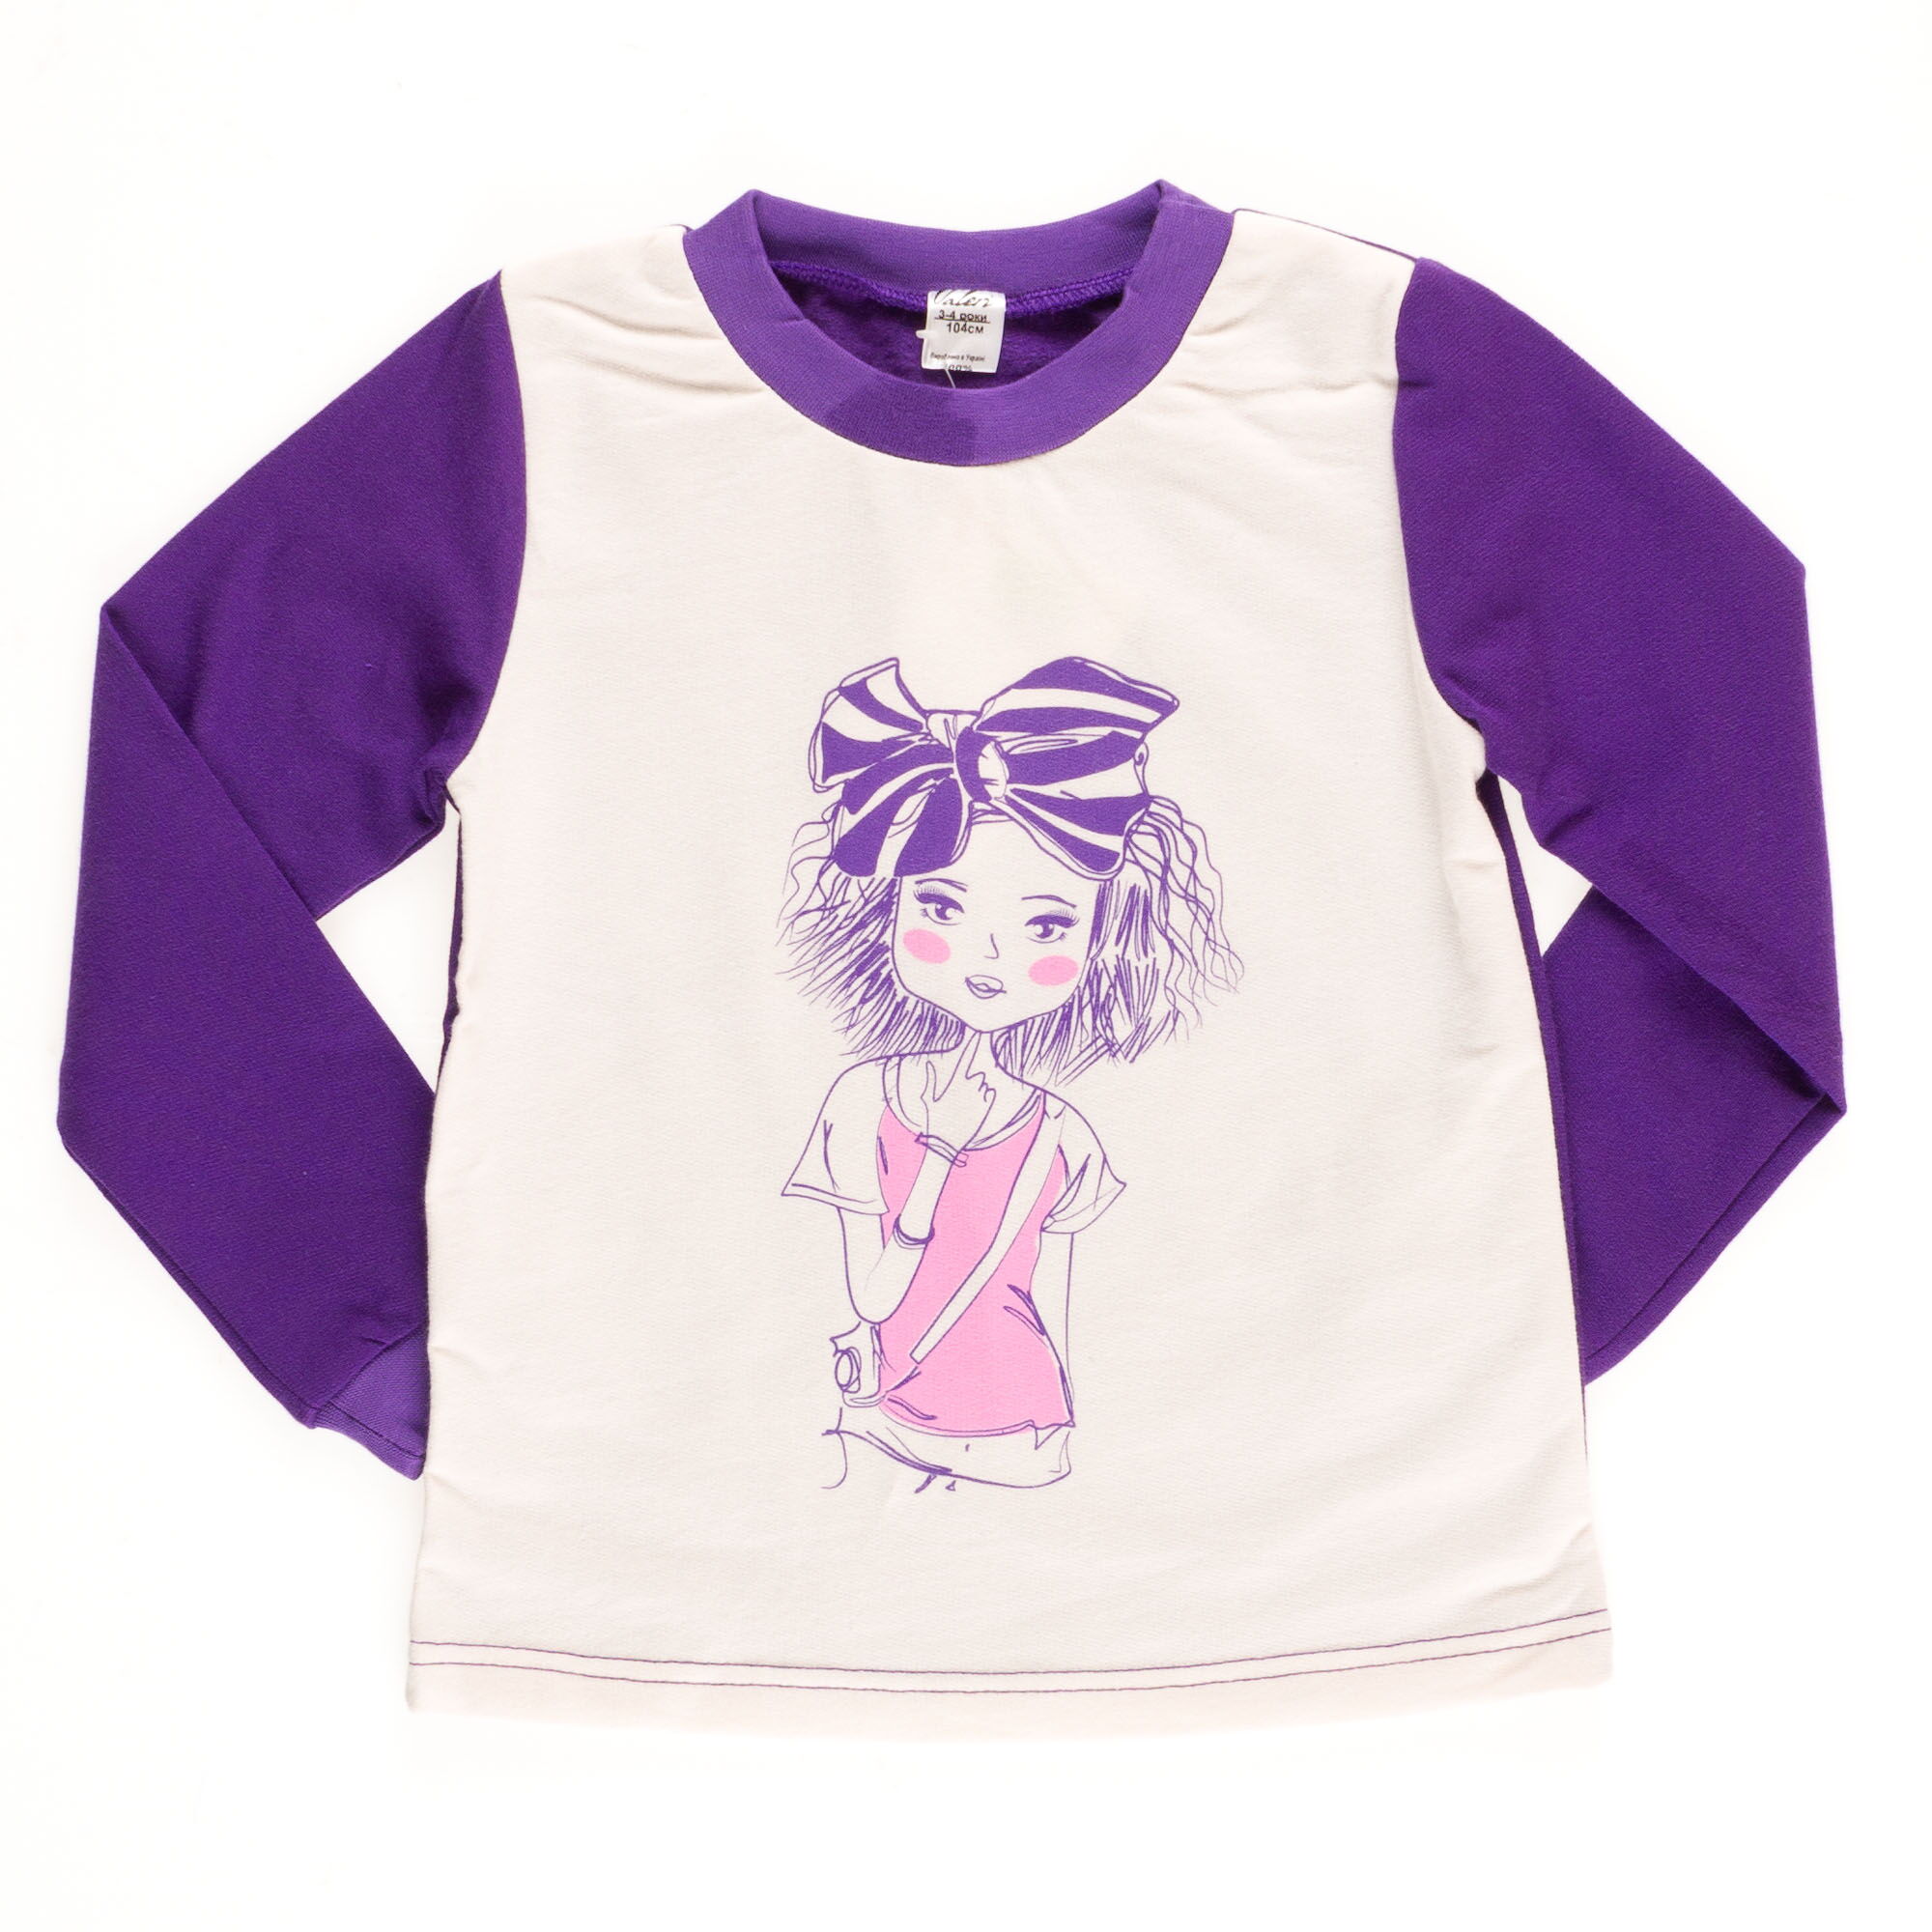 Пижама утепленная для девочки Valeri tex фиолетовая 1623-55-155 - фото